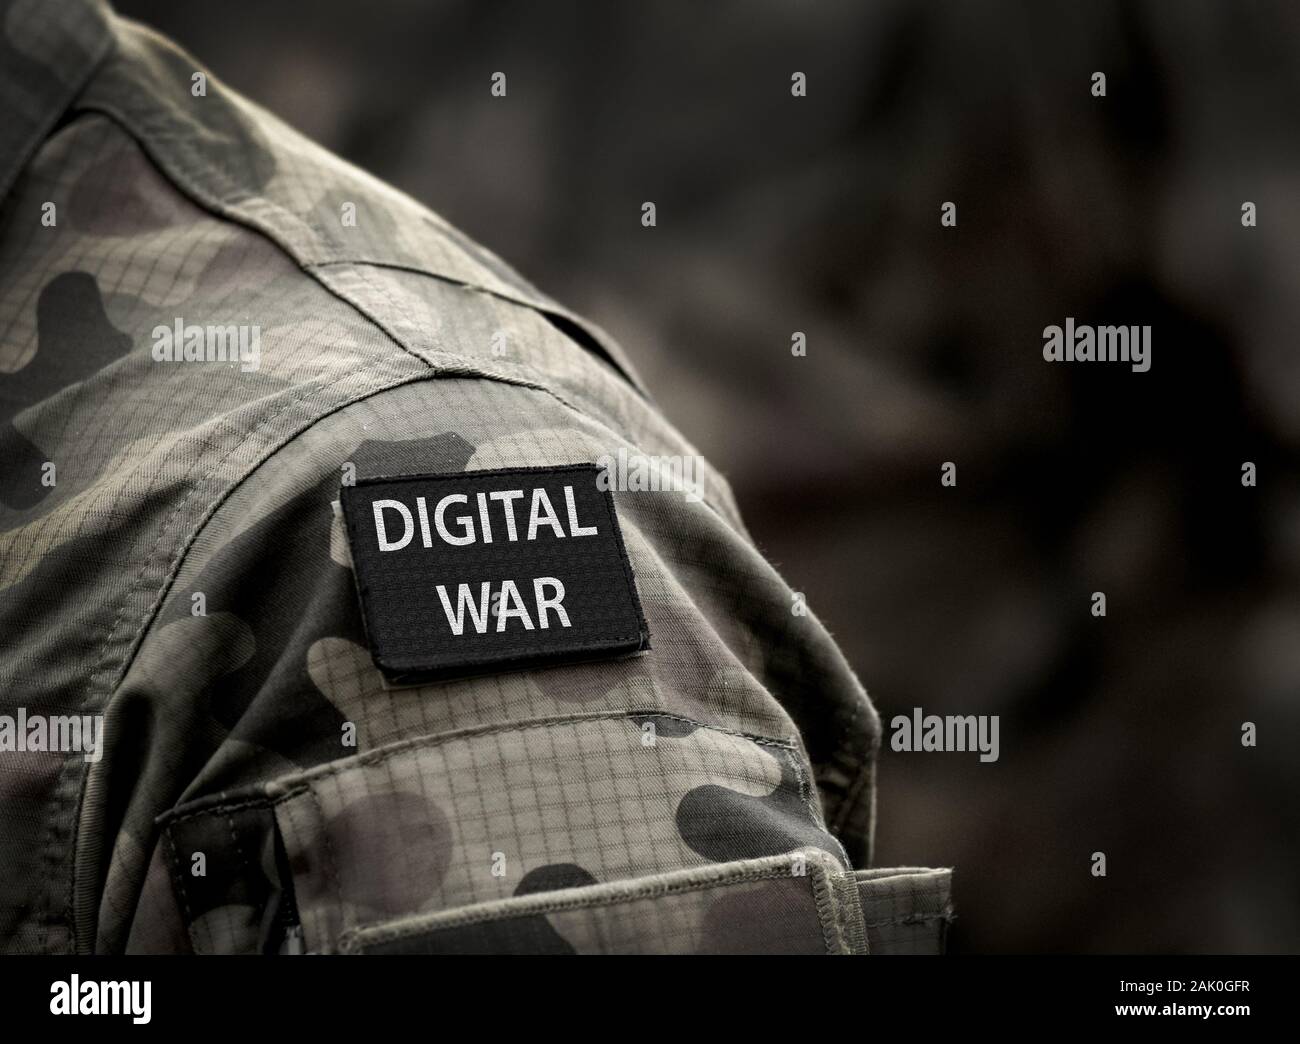 Digitale Krieg Beschriftung auf der Uniform. Digitale Krieg Konzept. Stockfoto